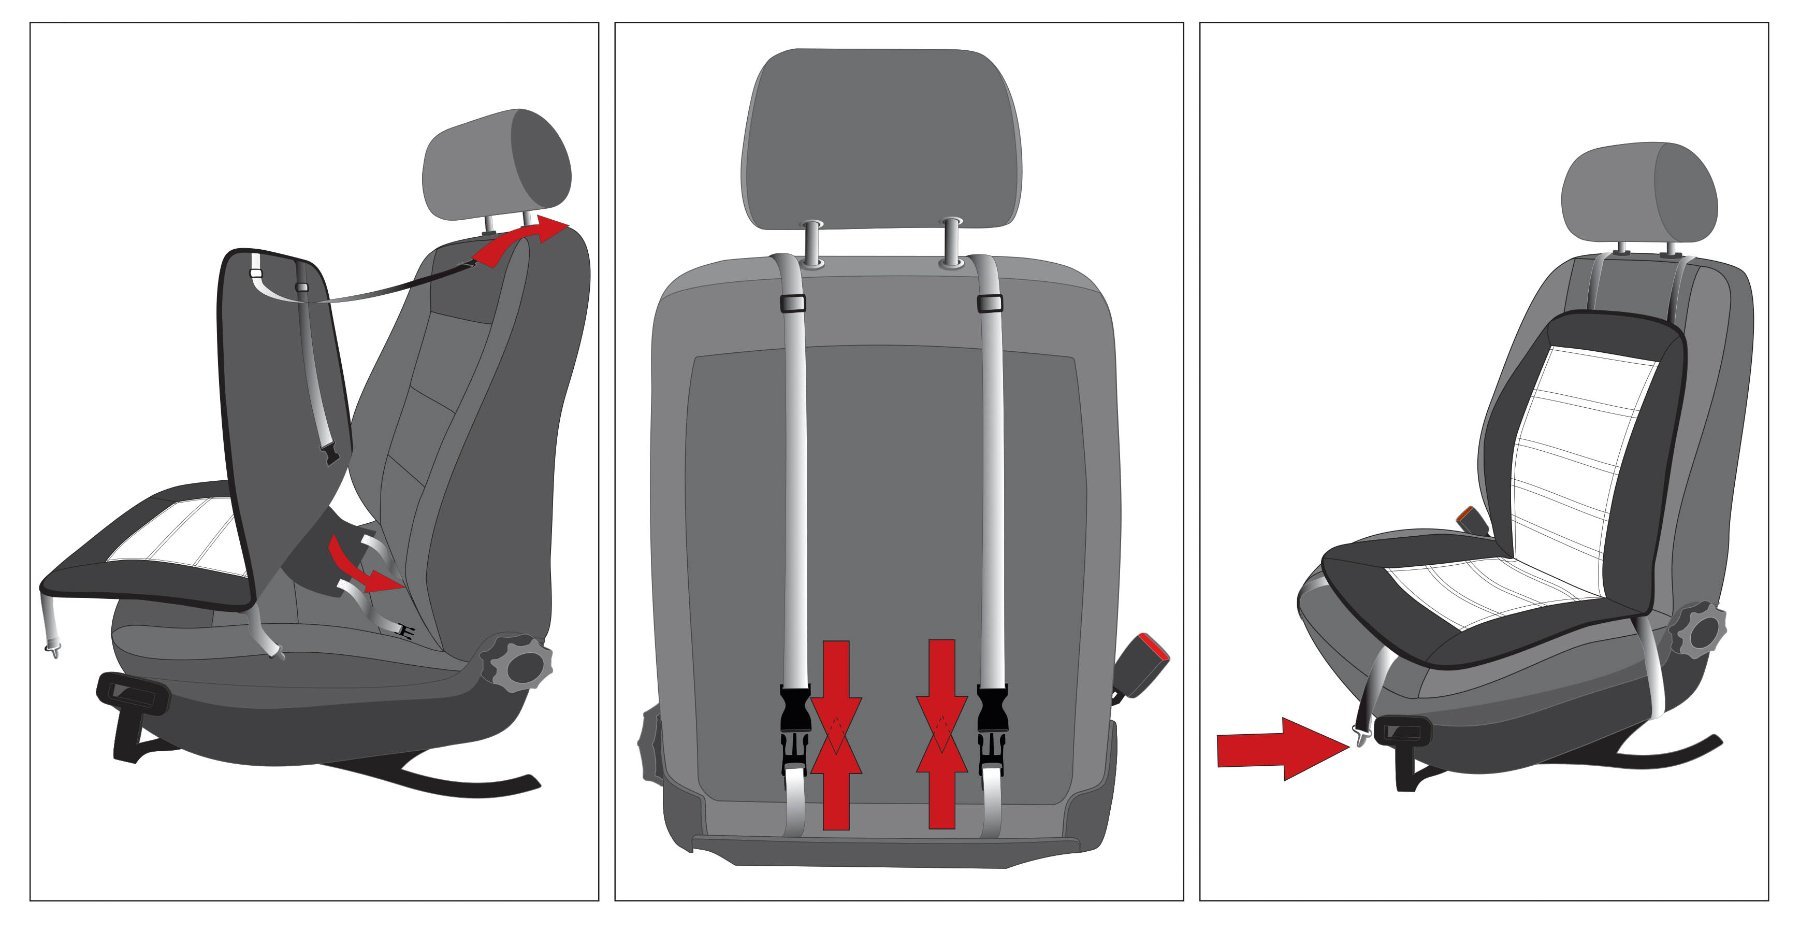 Premium housse de siège chauffante, modèle Caldo - Dossier et assise chauffants individuellement, 2 niveaux de chauffage au choix, chauffage de siège auto avec prise 12 volts